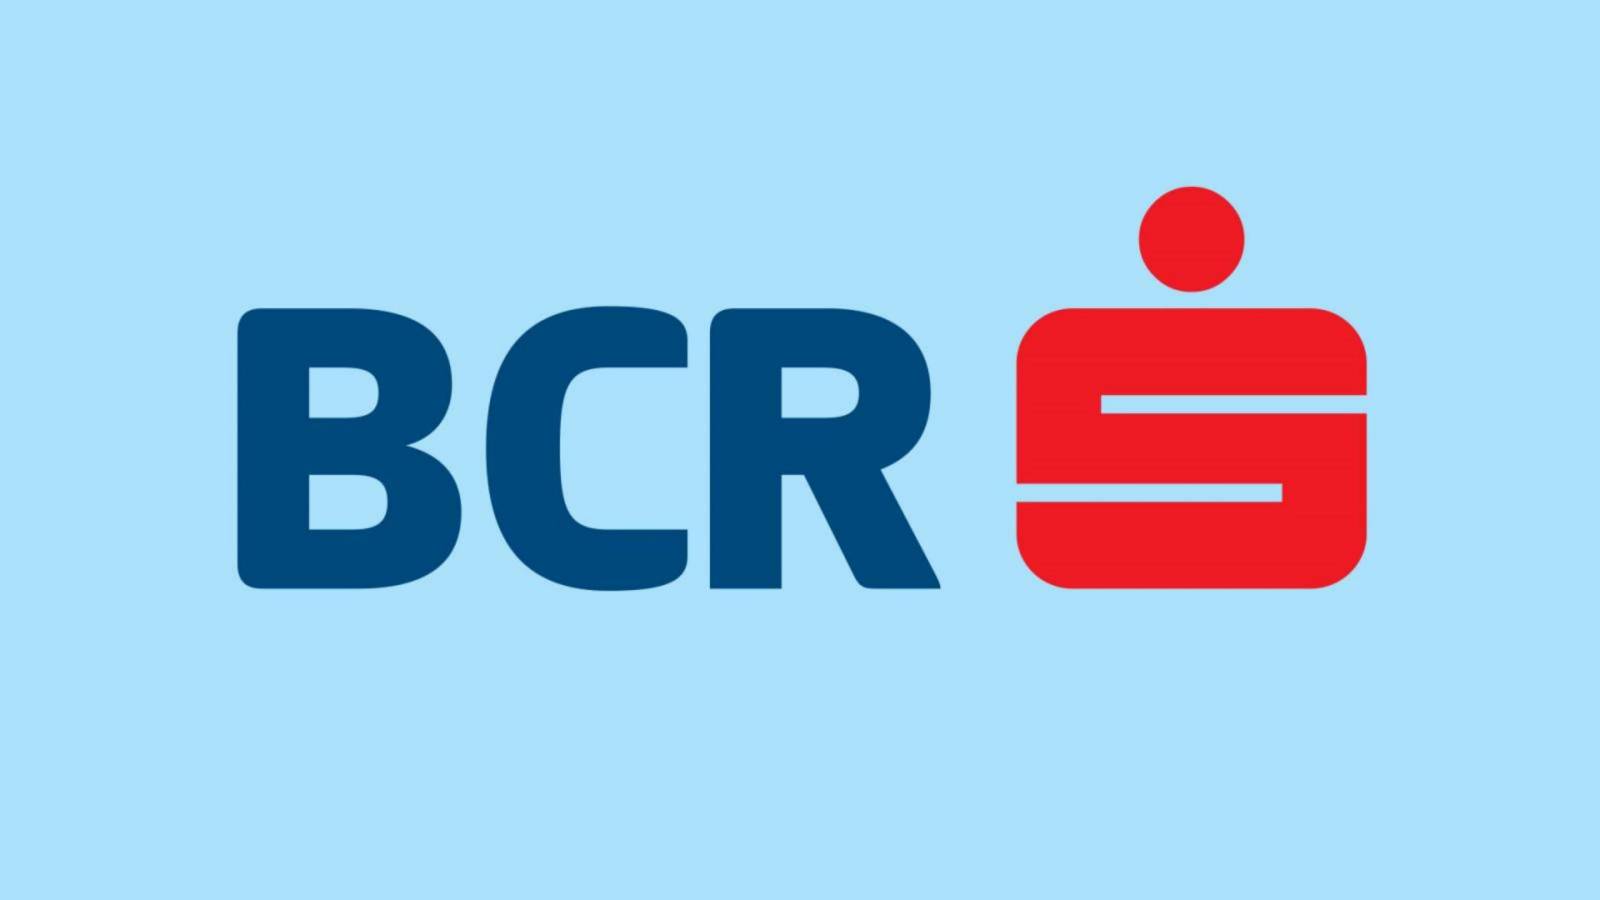 BCR Rumänien rörlighet